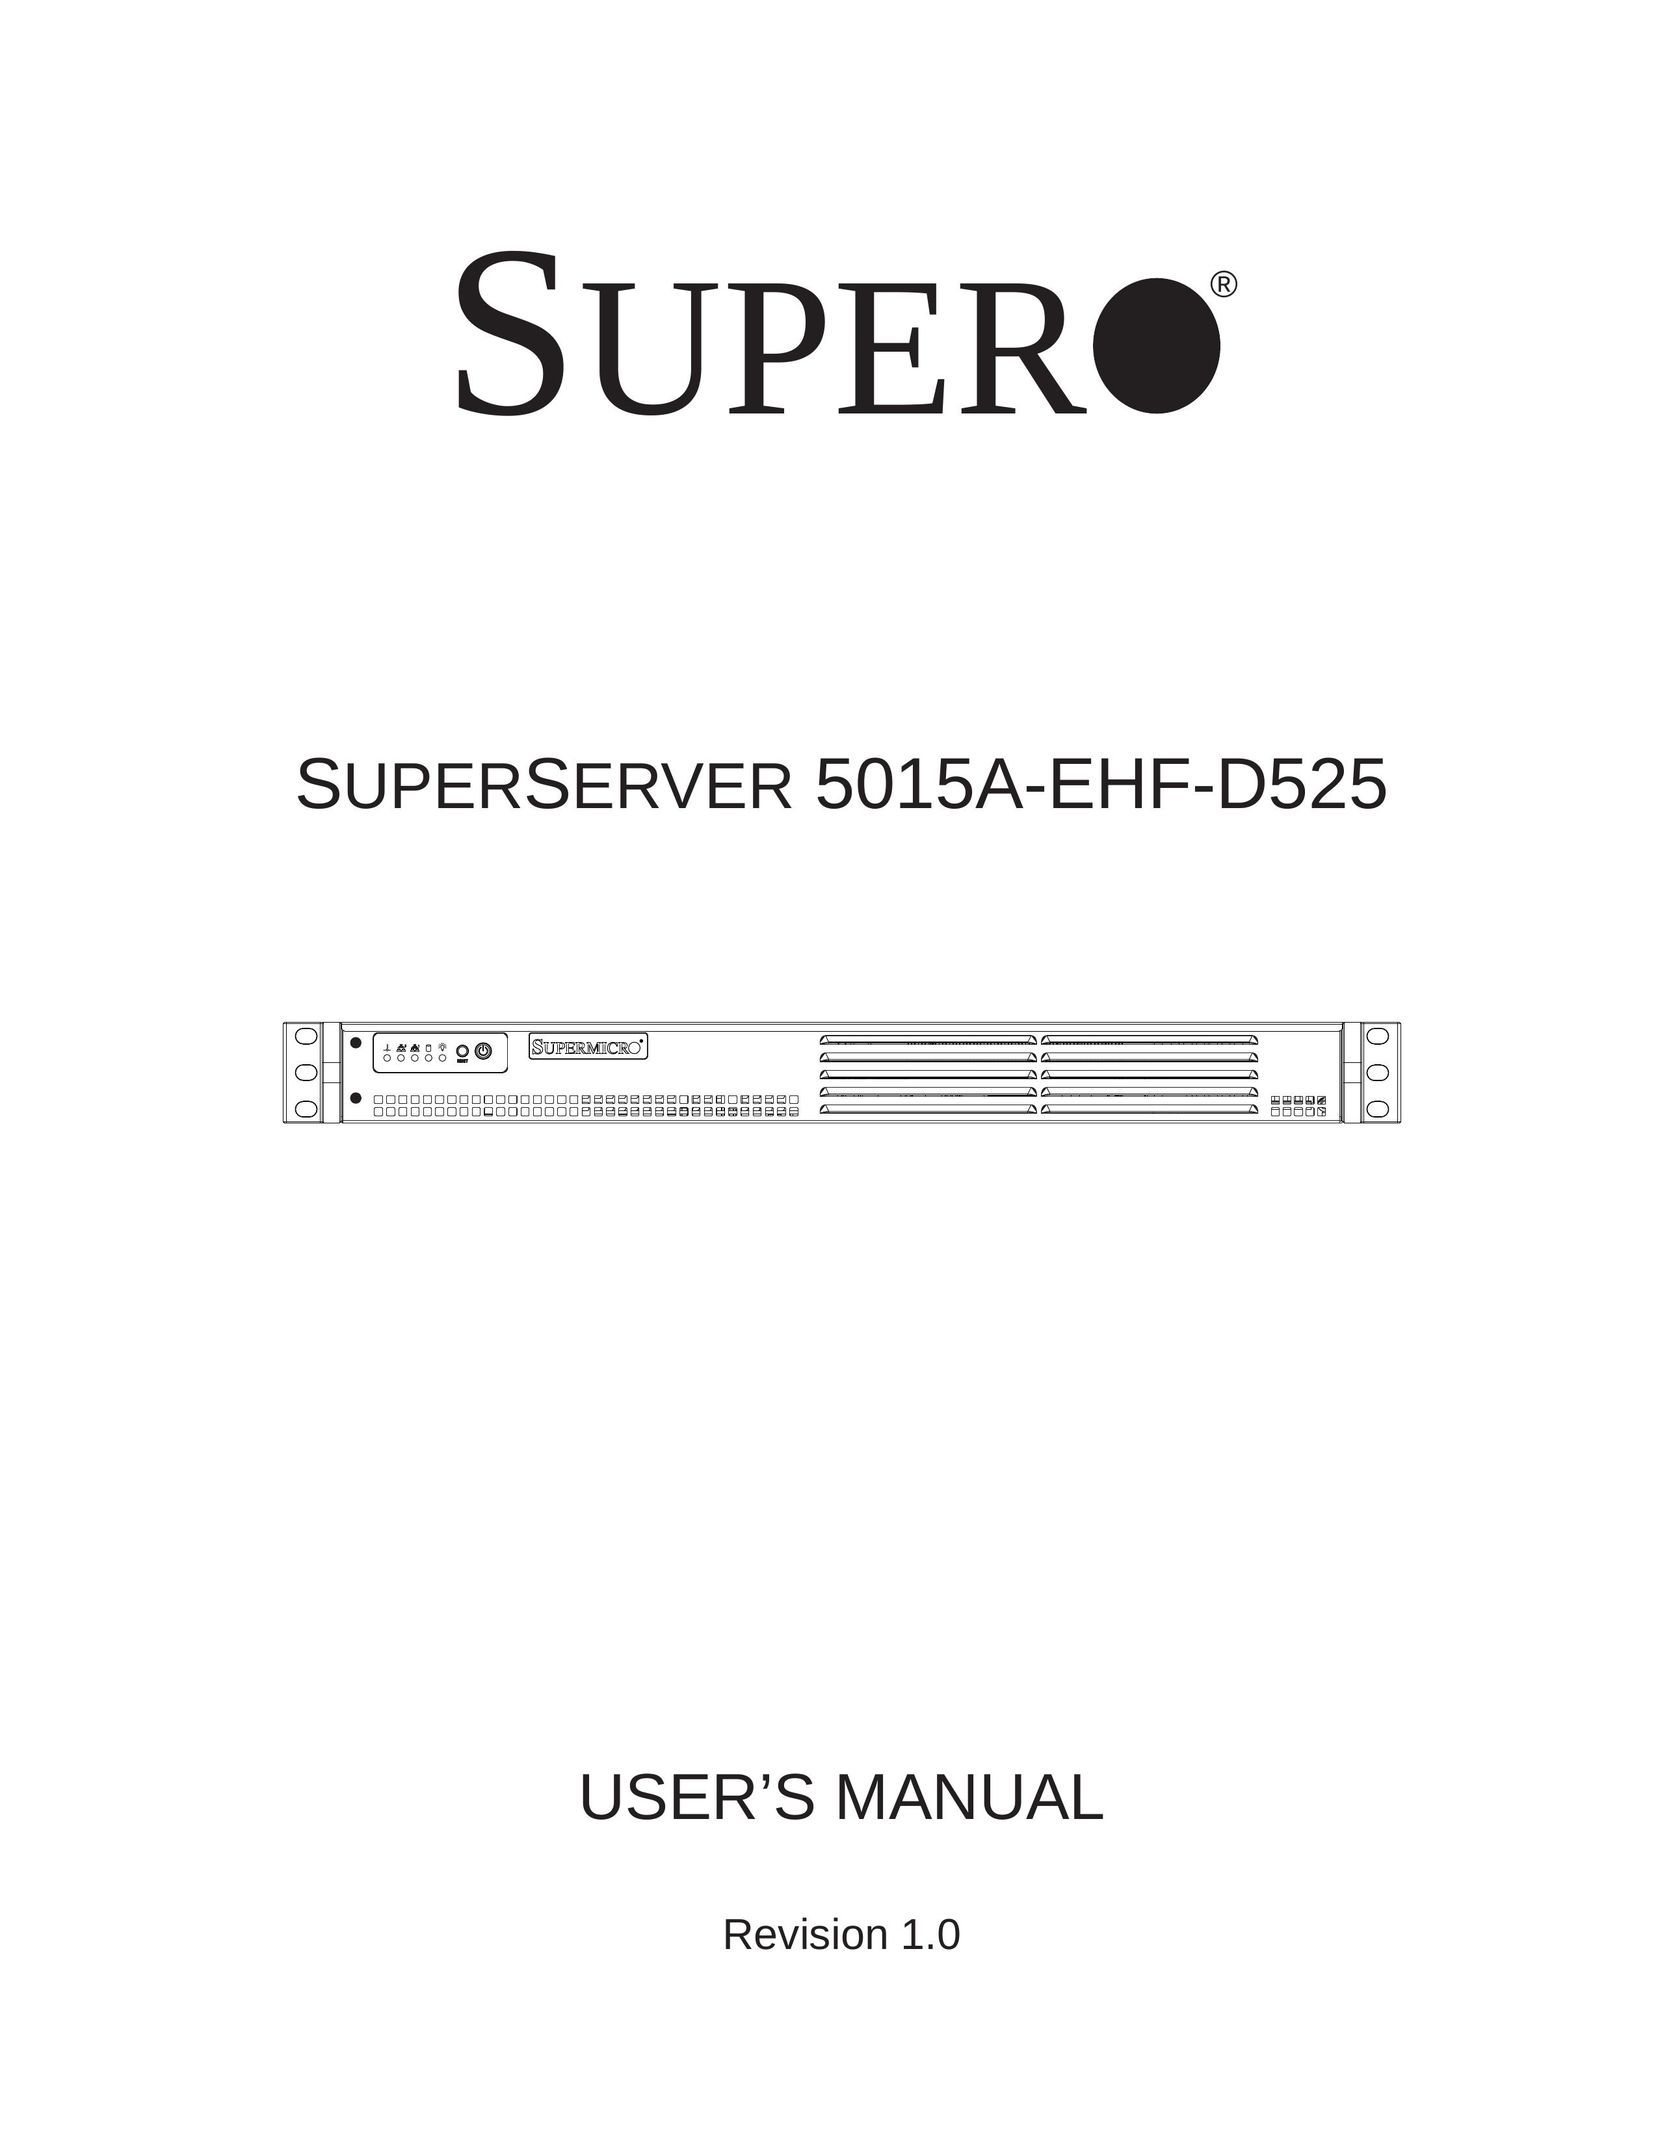 SUPER MICRO Computer 5015A-EHF-D525 Server User Manual